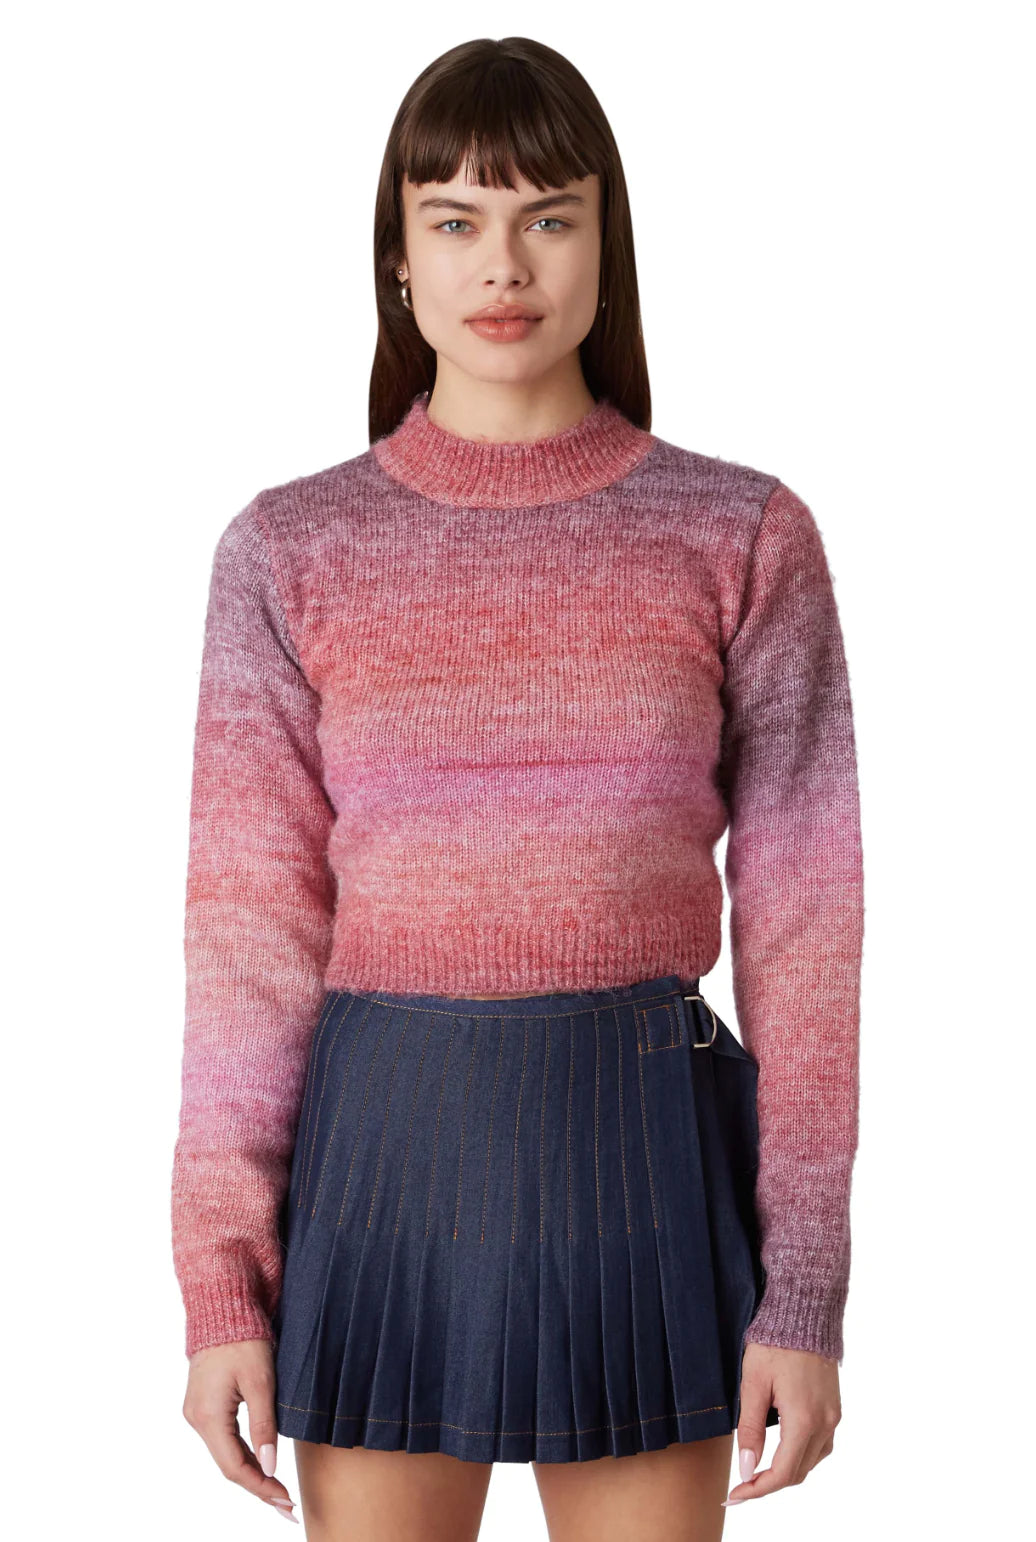 Aspen Sweater in Dusty Pink